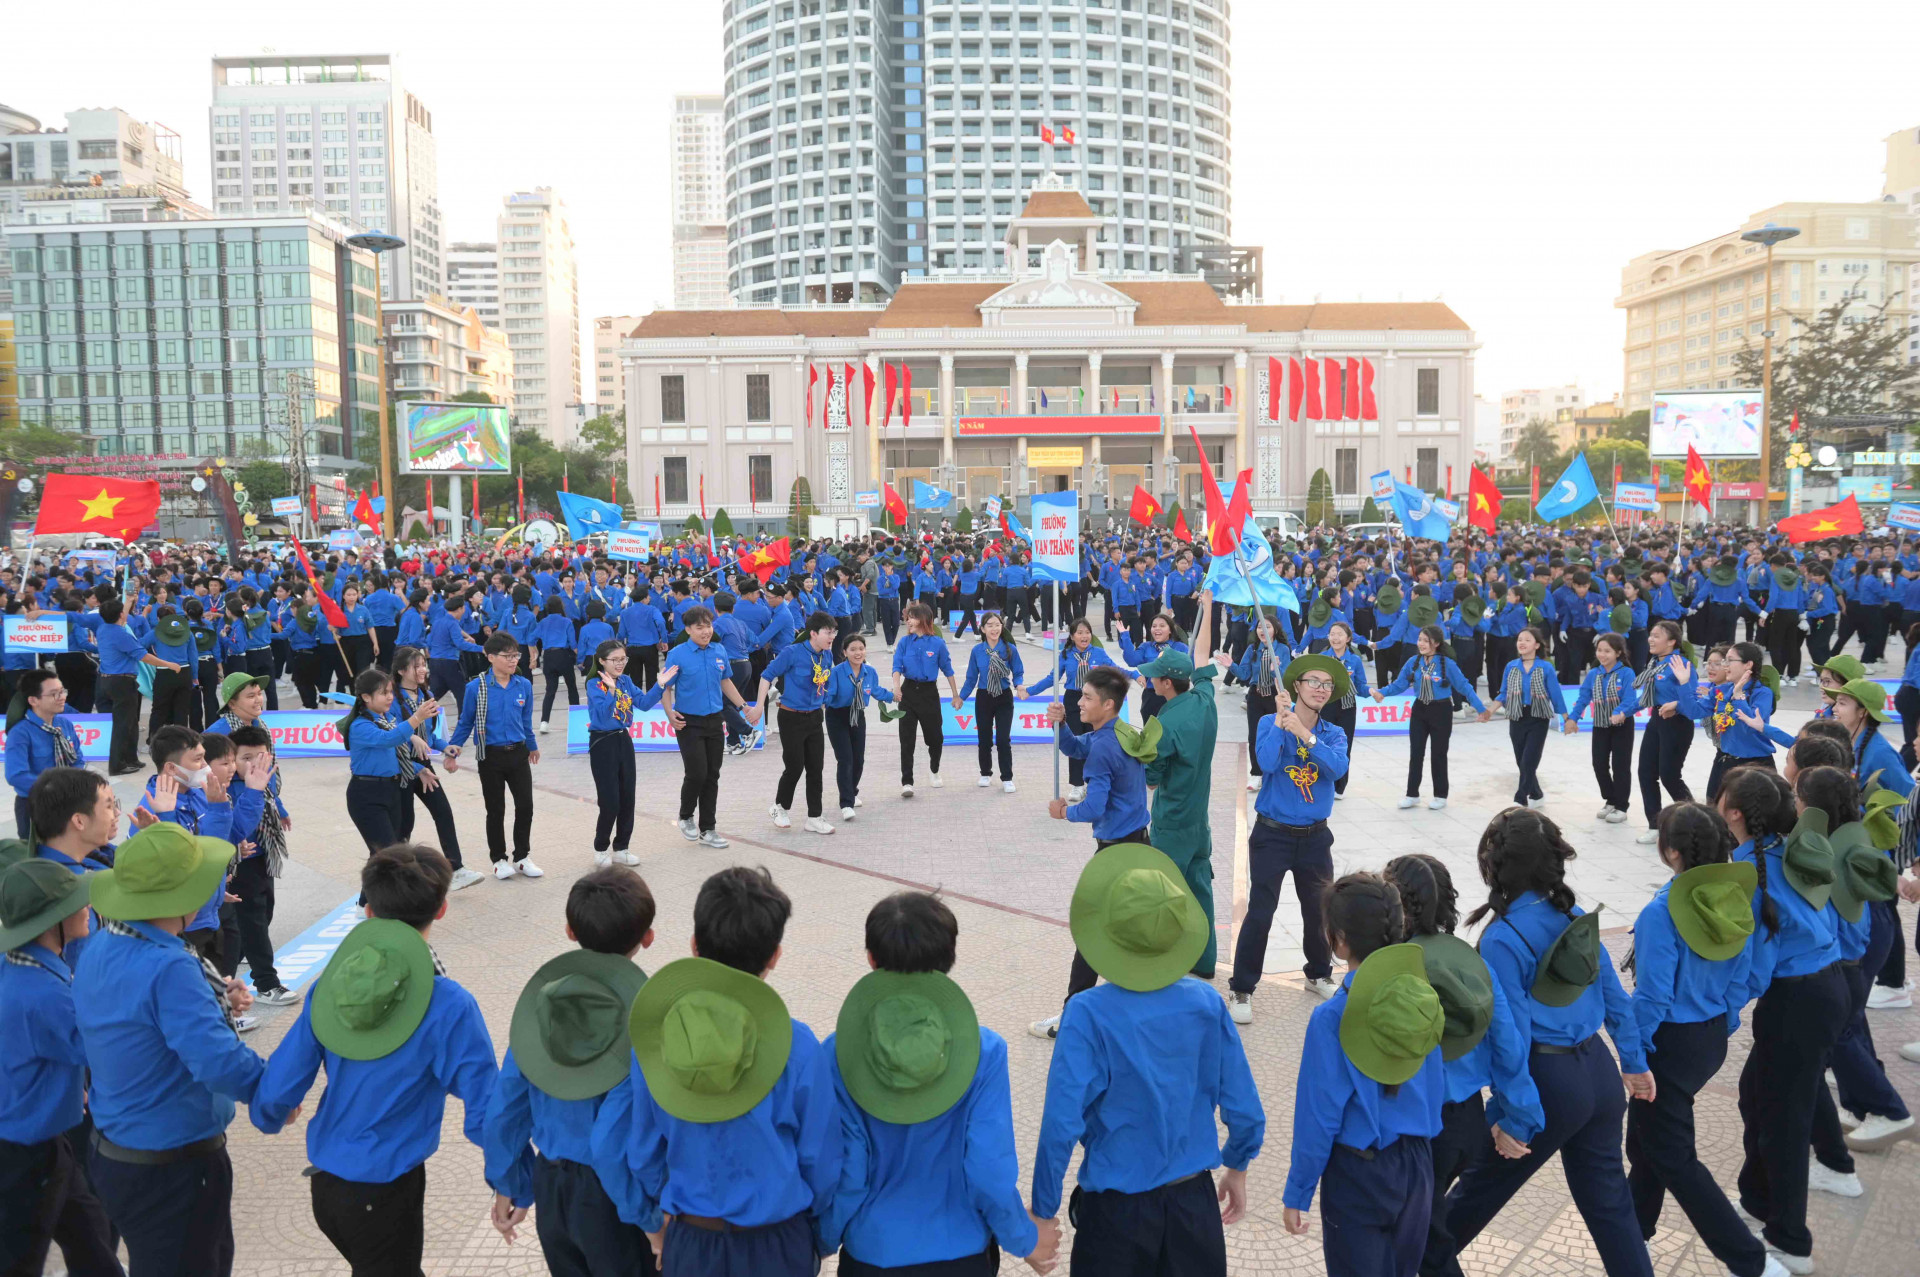 Tại hội thi, các chi hội, câu lạc bộ, đội, nhóm còn tham gia hoạt động múa hát các bài hát tập thể, múa dân vũ.